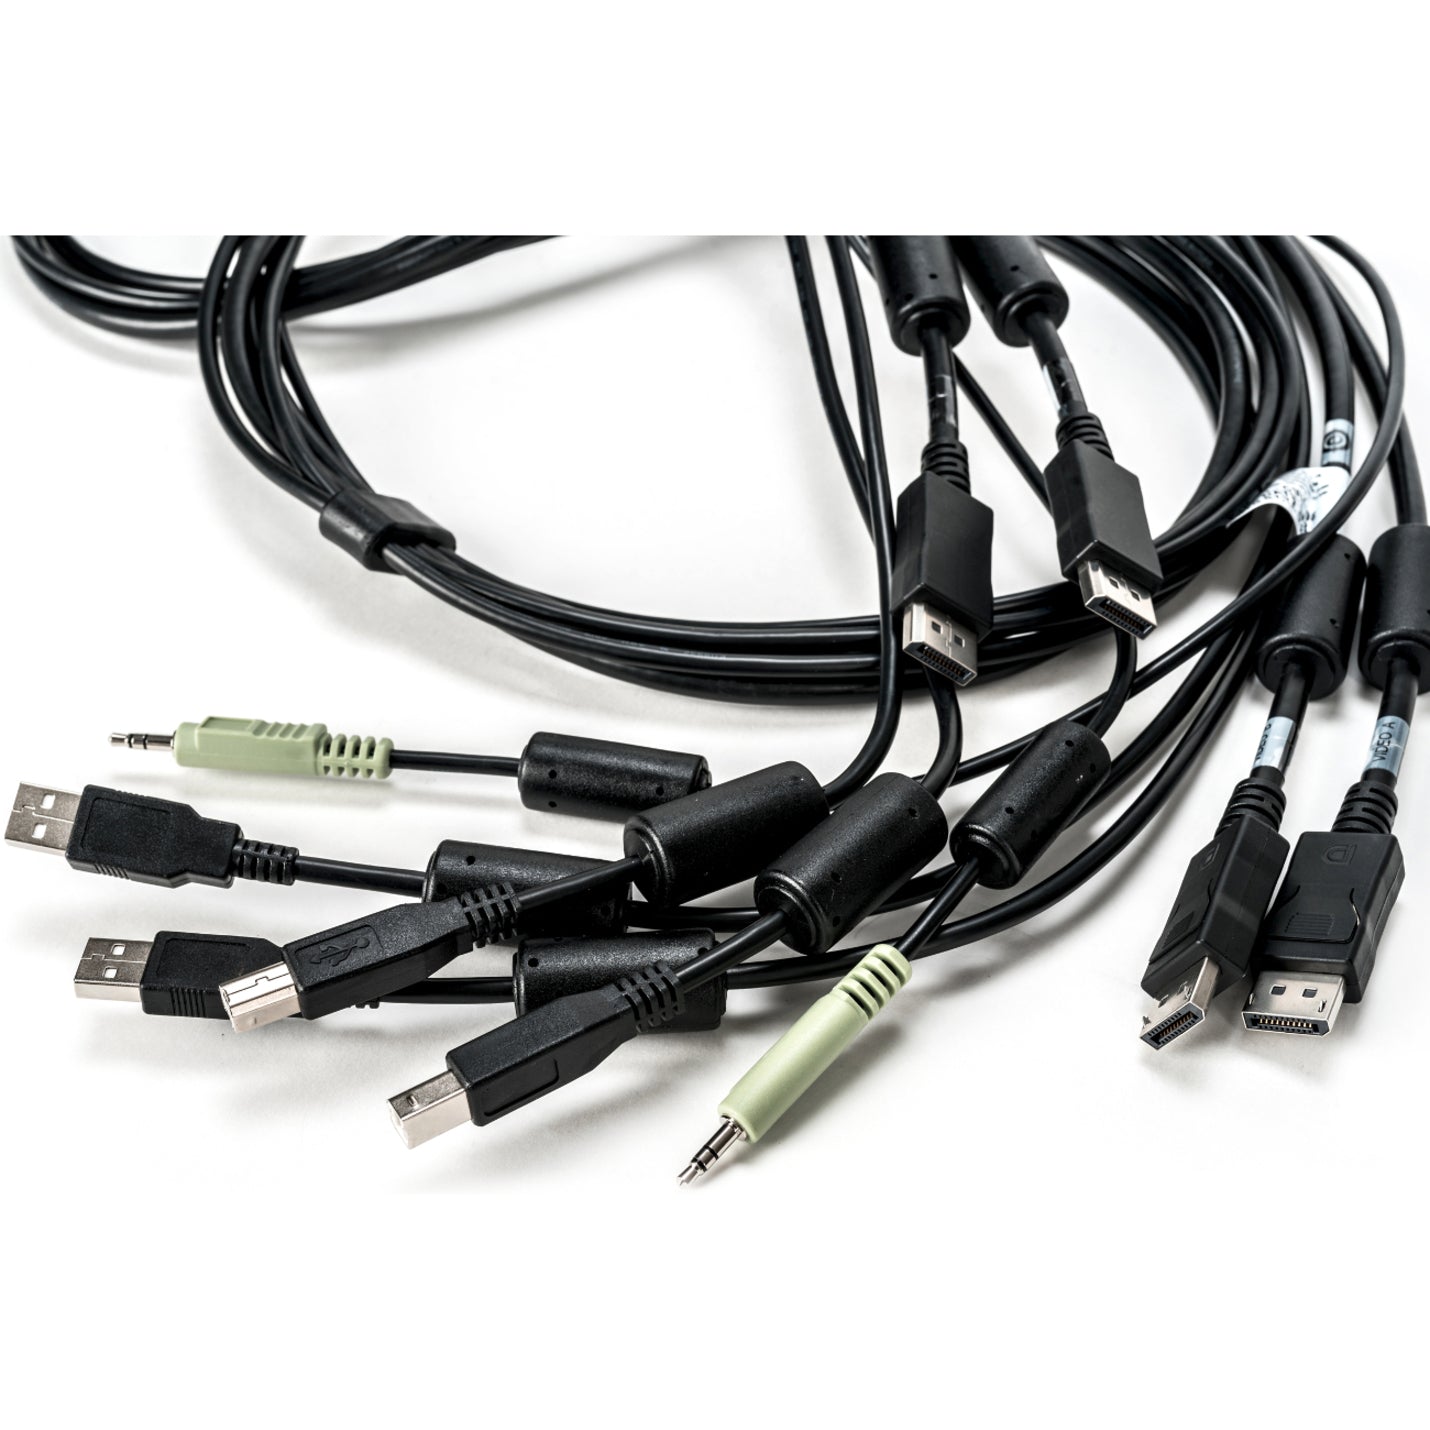 品牌名称：AVOCENT AVOCENT CBL0108 SC945D 电缆 - 6英尺，双USB键盘和鼠标，双DisplayPort和音频电缆